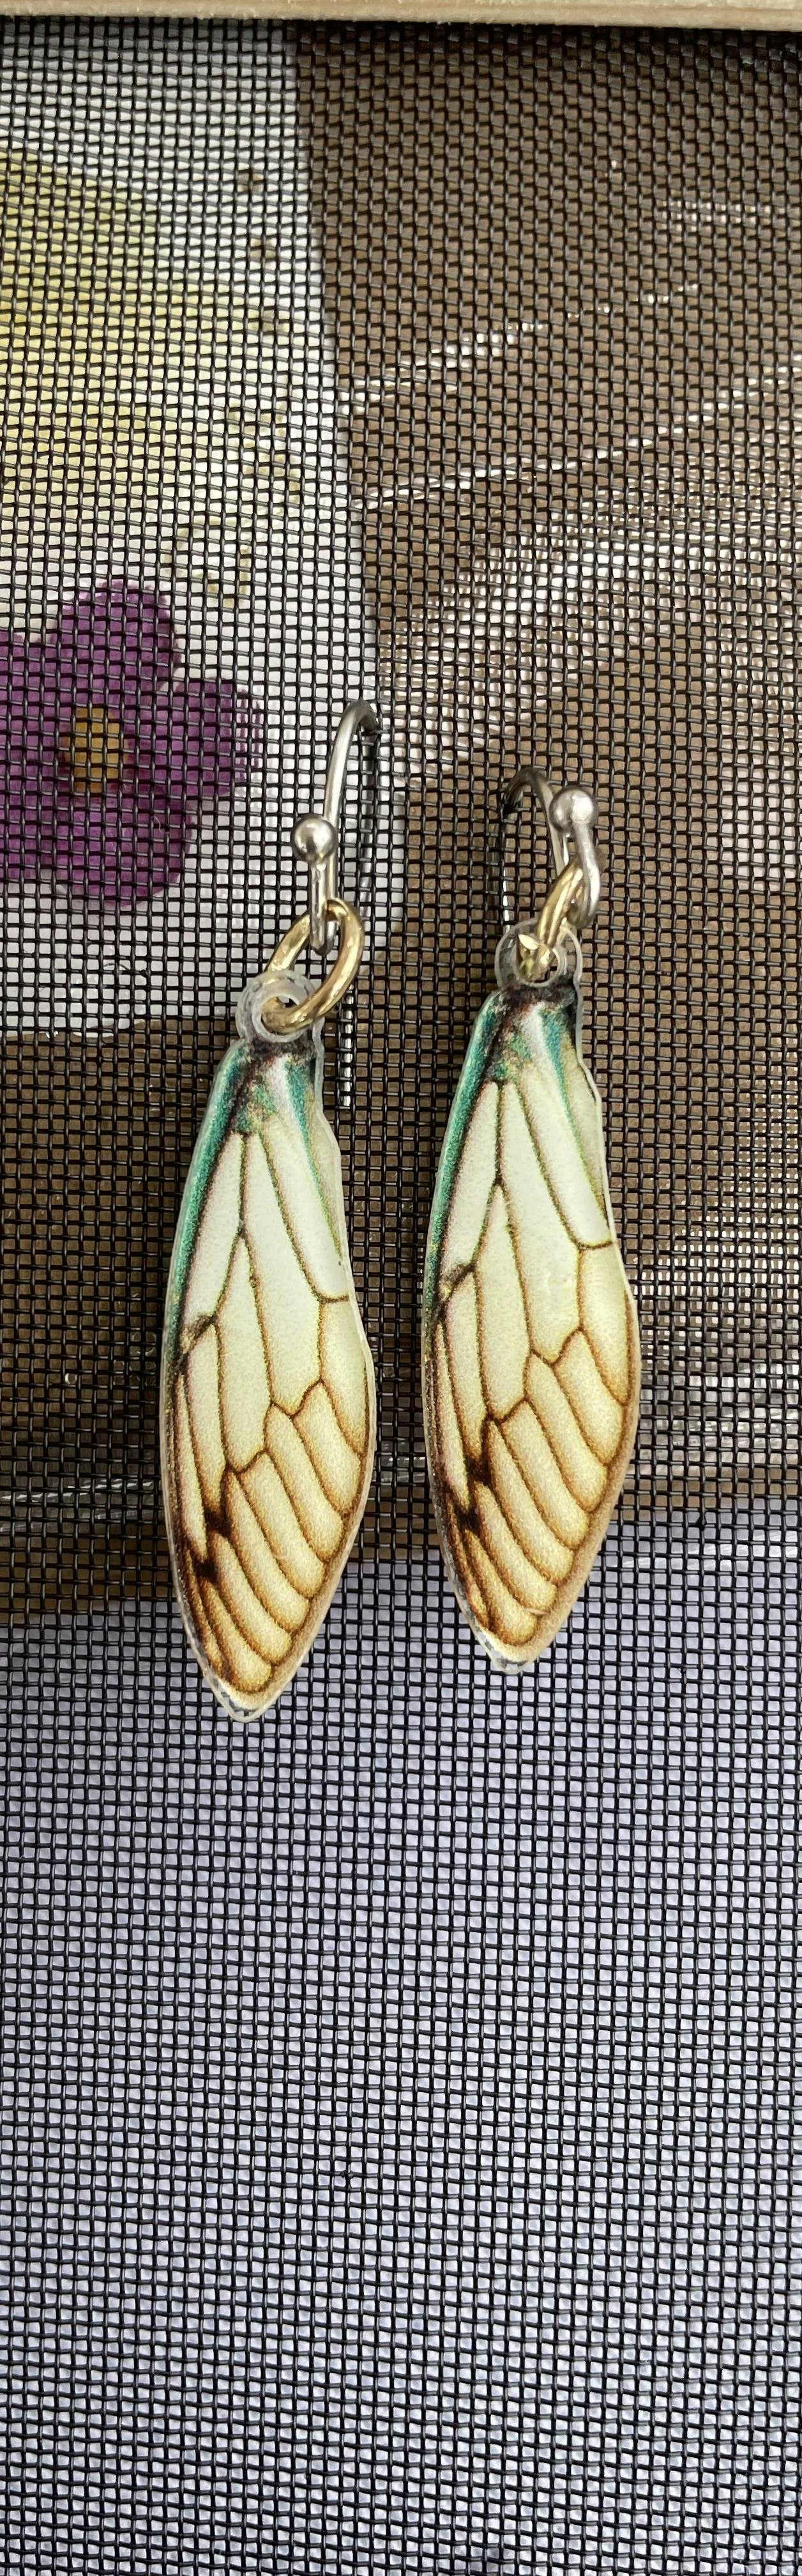 Dragonfly earrings 